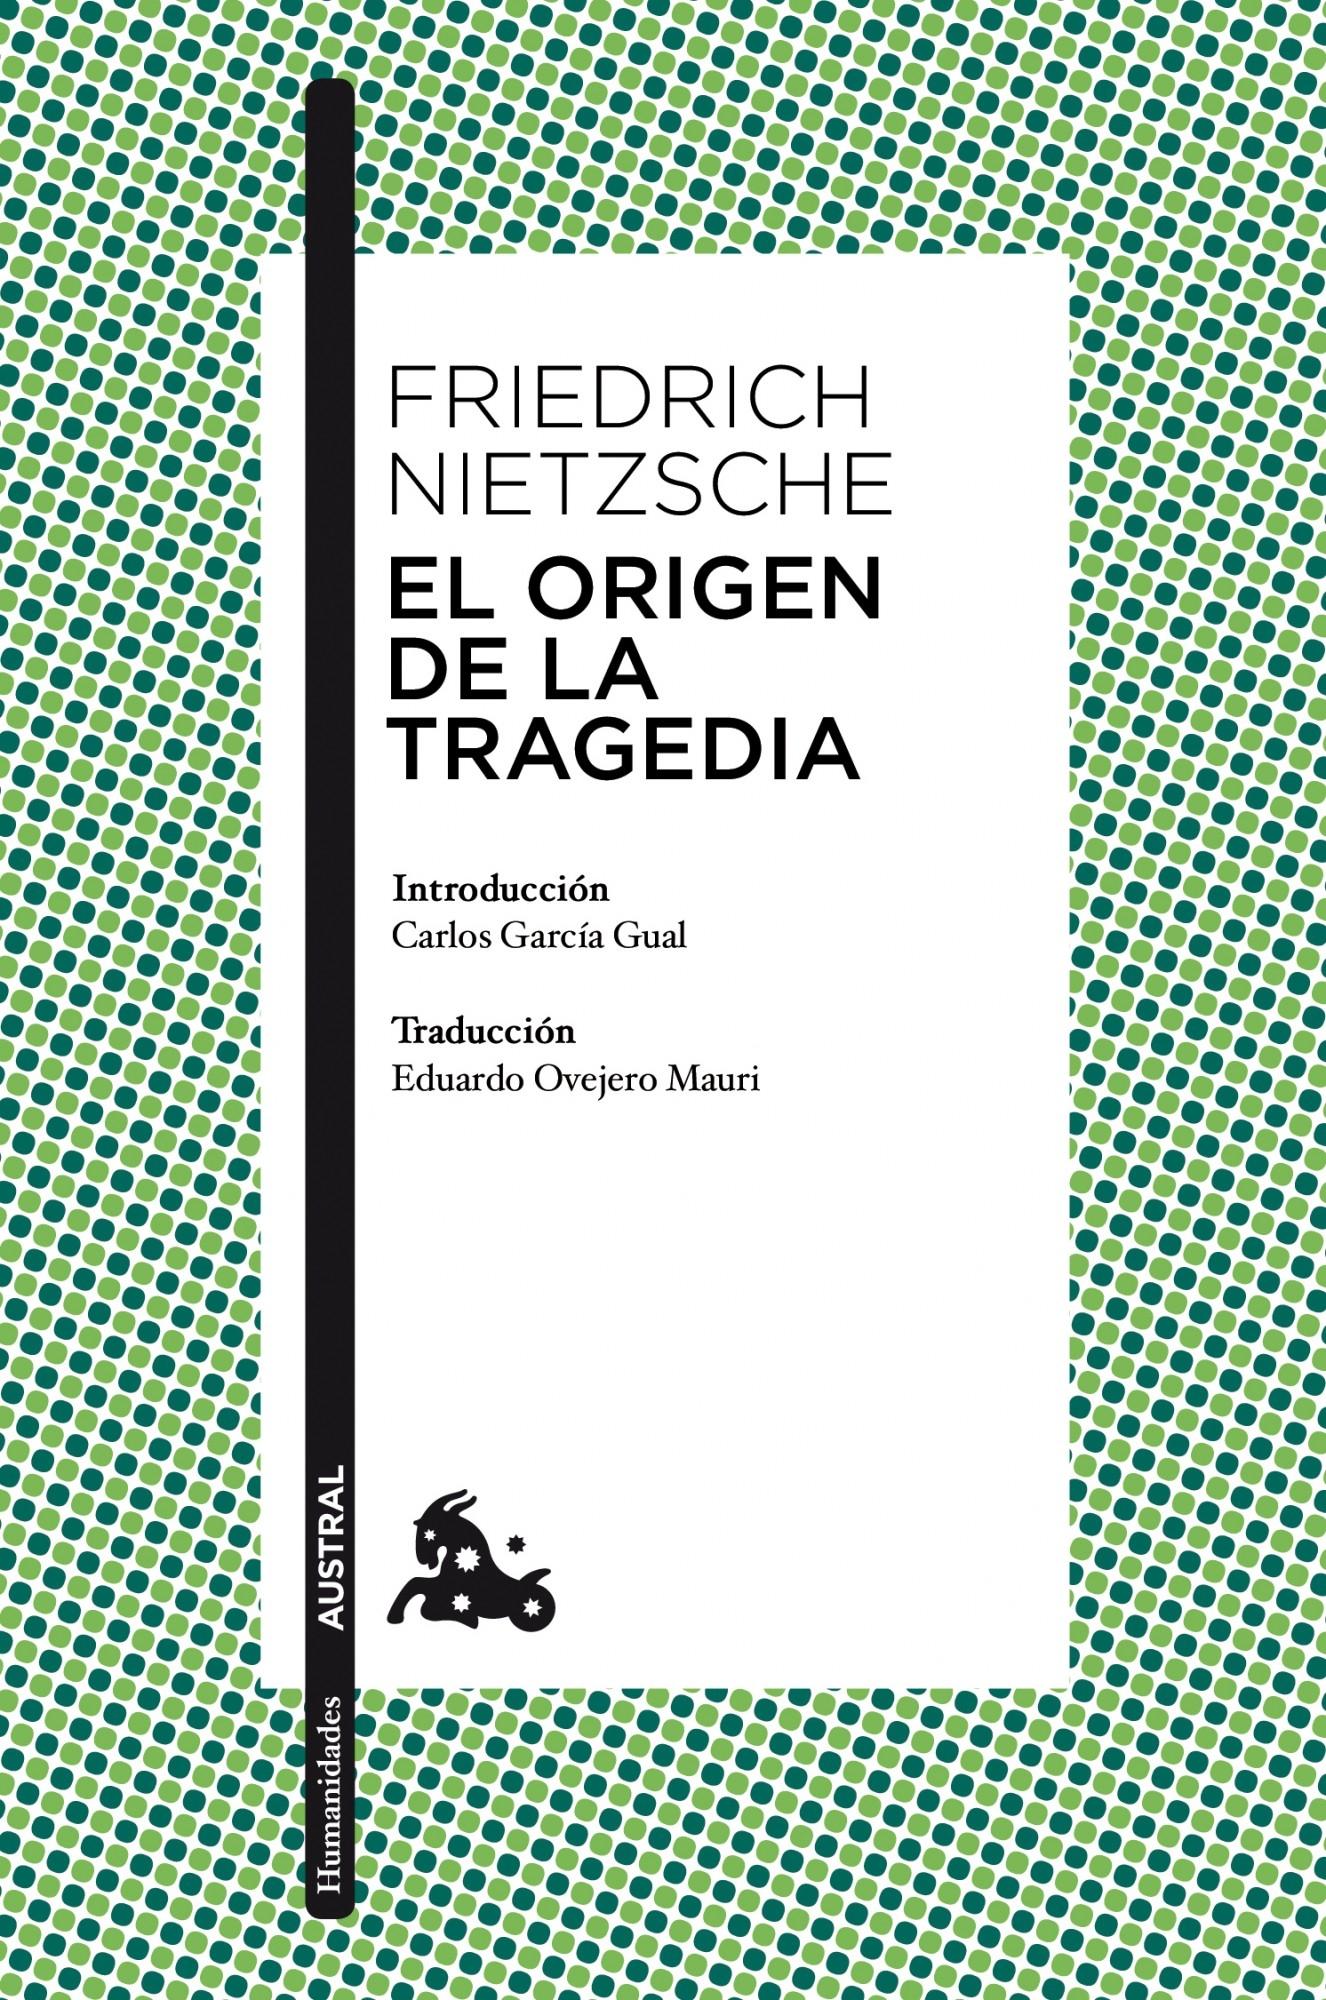 El Origen de la Tragedia "Introducción de Carlos García Gual. Traducción de Eduardo Ovejero Mauri". 